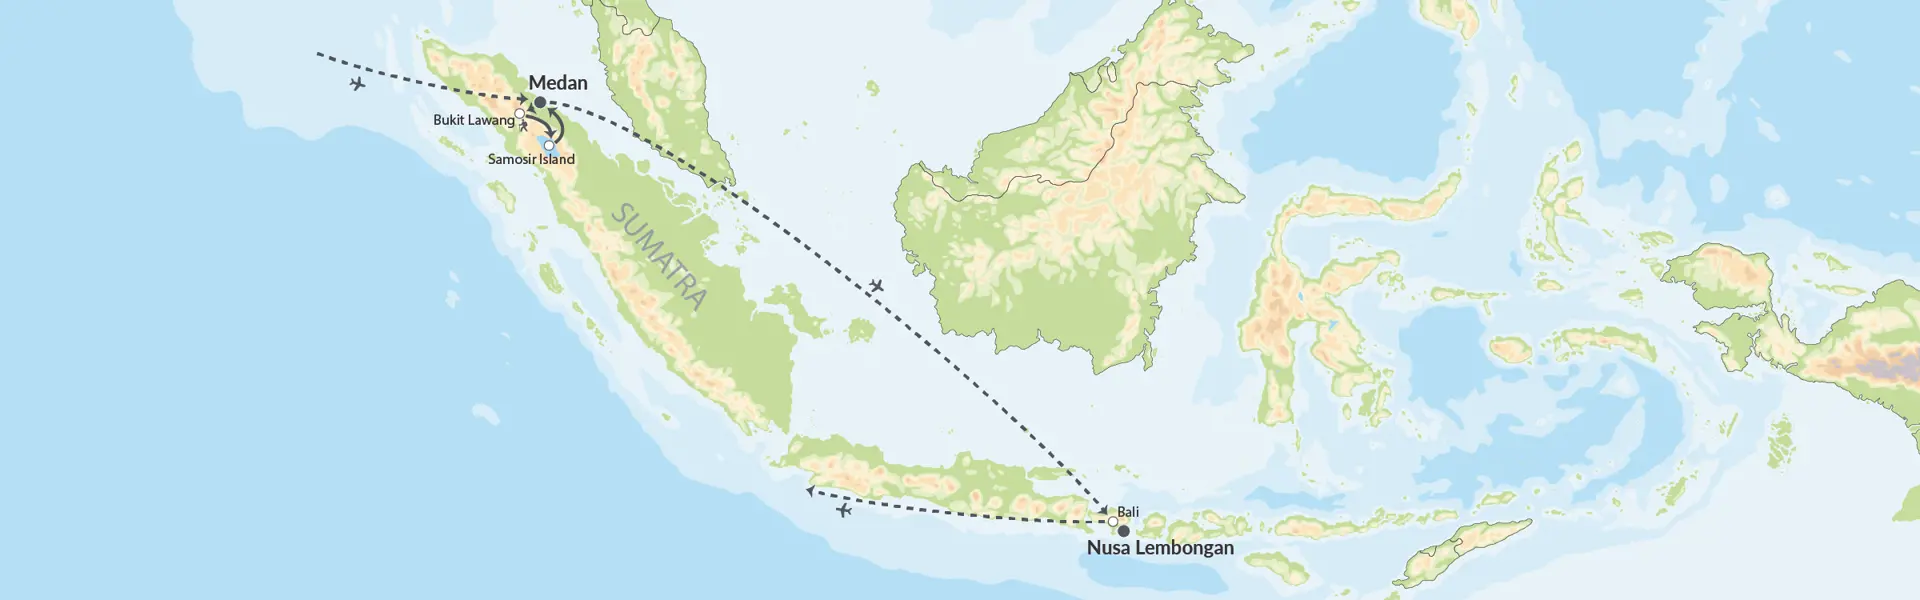 108007 Sumatra Og Bali